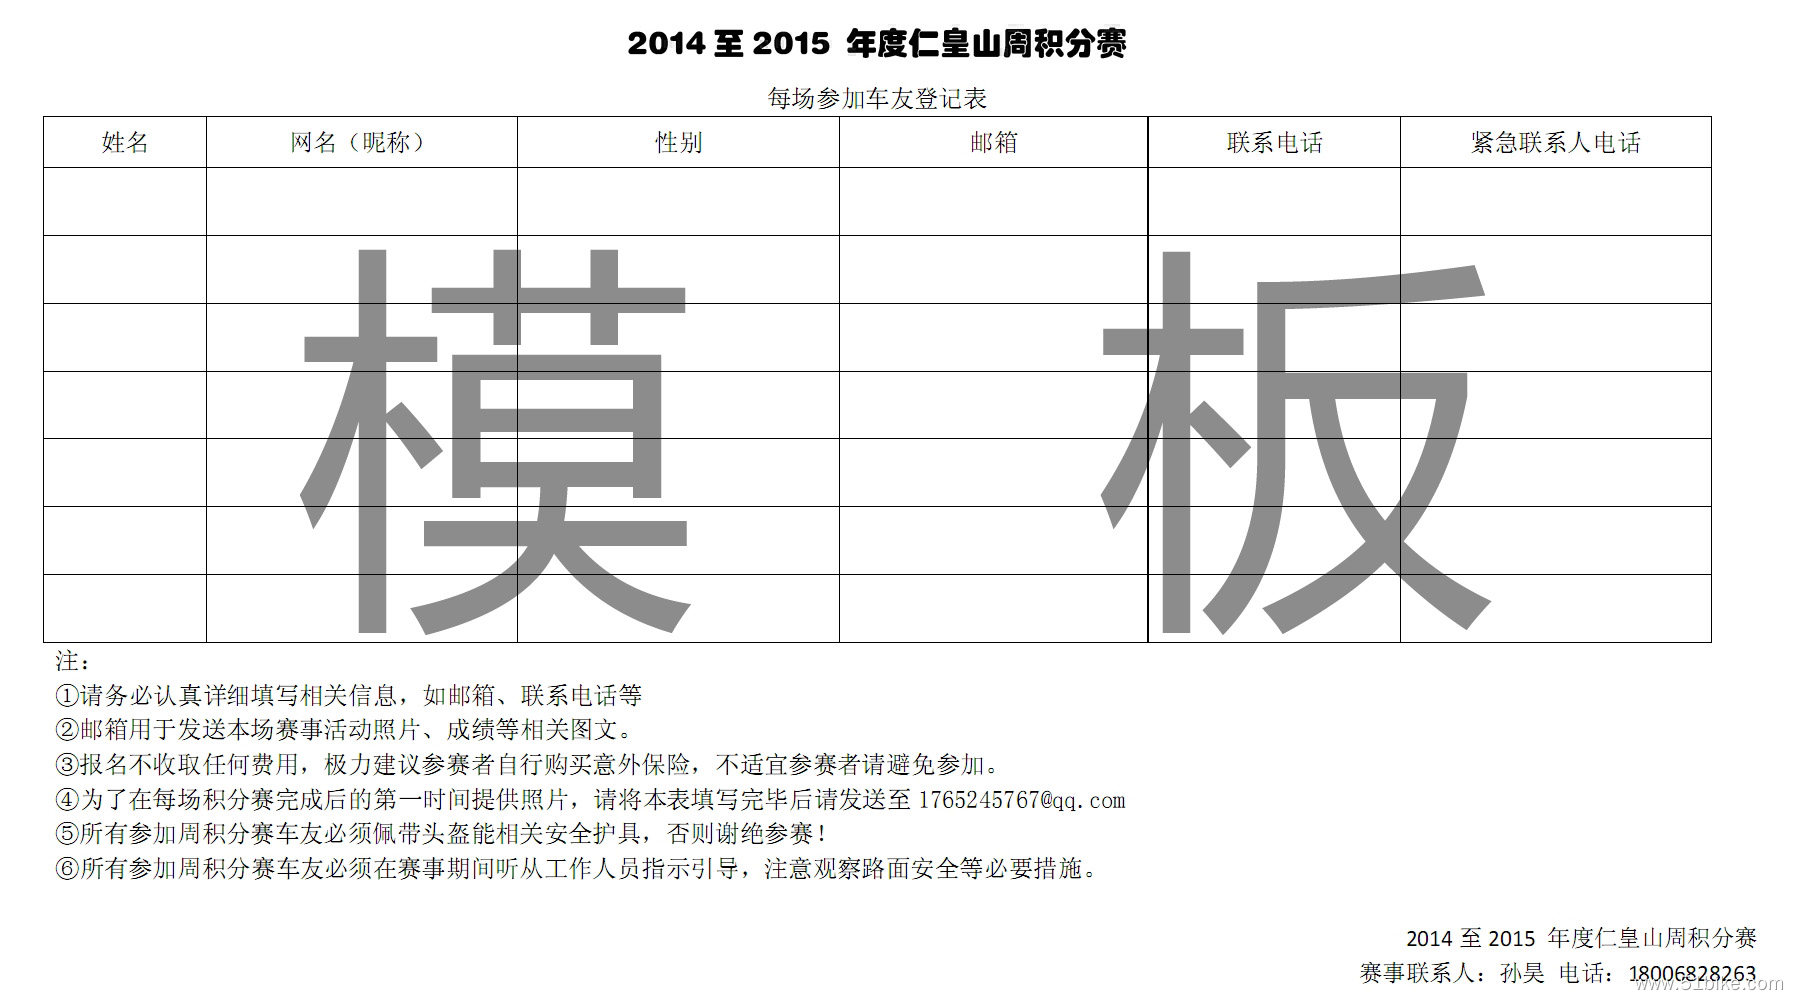 2014至2015 年度仁皇山周积分赛每周报名表.jpg